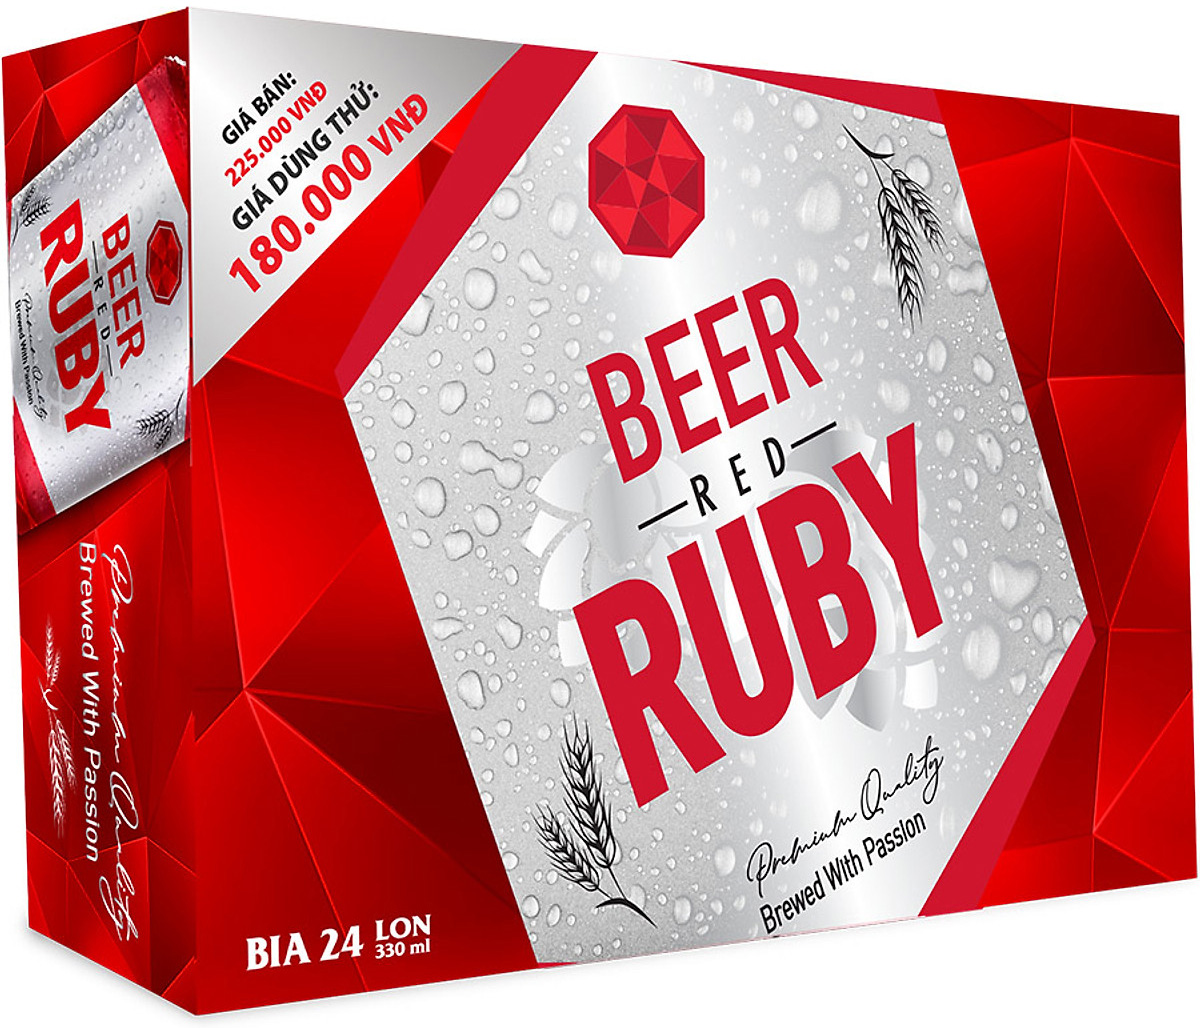 Bia Red Ruby - Thưởng thức hương vị đặc biệt của Bia Red Ruby. Với màu đỏ thuần khiết và vị độc đáo, Bia Red Ruby sẽ mang lại cho bạn một cảm giác thật sự khác biệt khi thưởng thức.